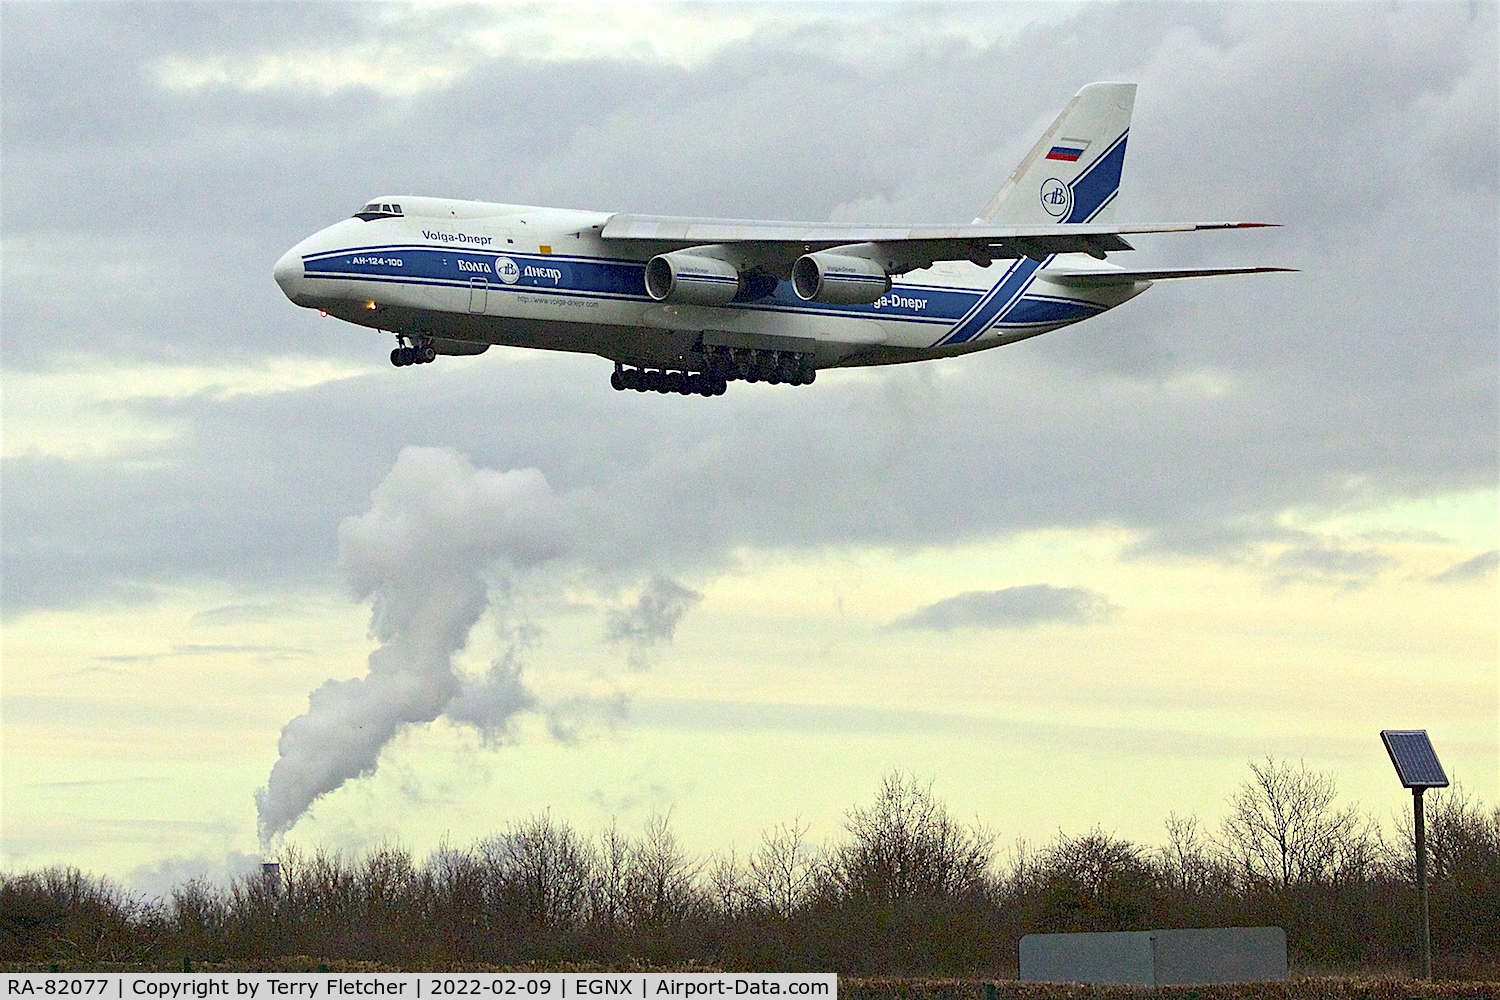 RA-82077, 1995 Antonov An-124-100 Ruslan C/N 9773054459151/0709, Arriving at East Midlands Airport